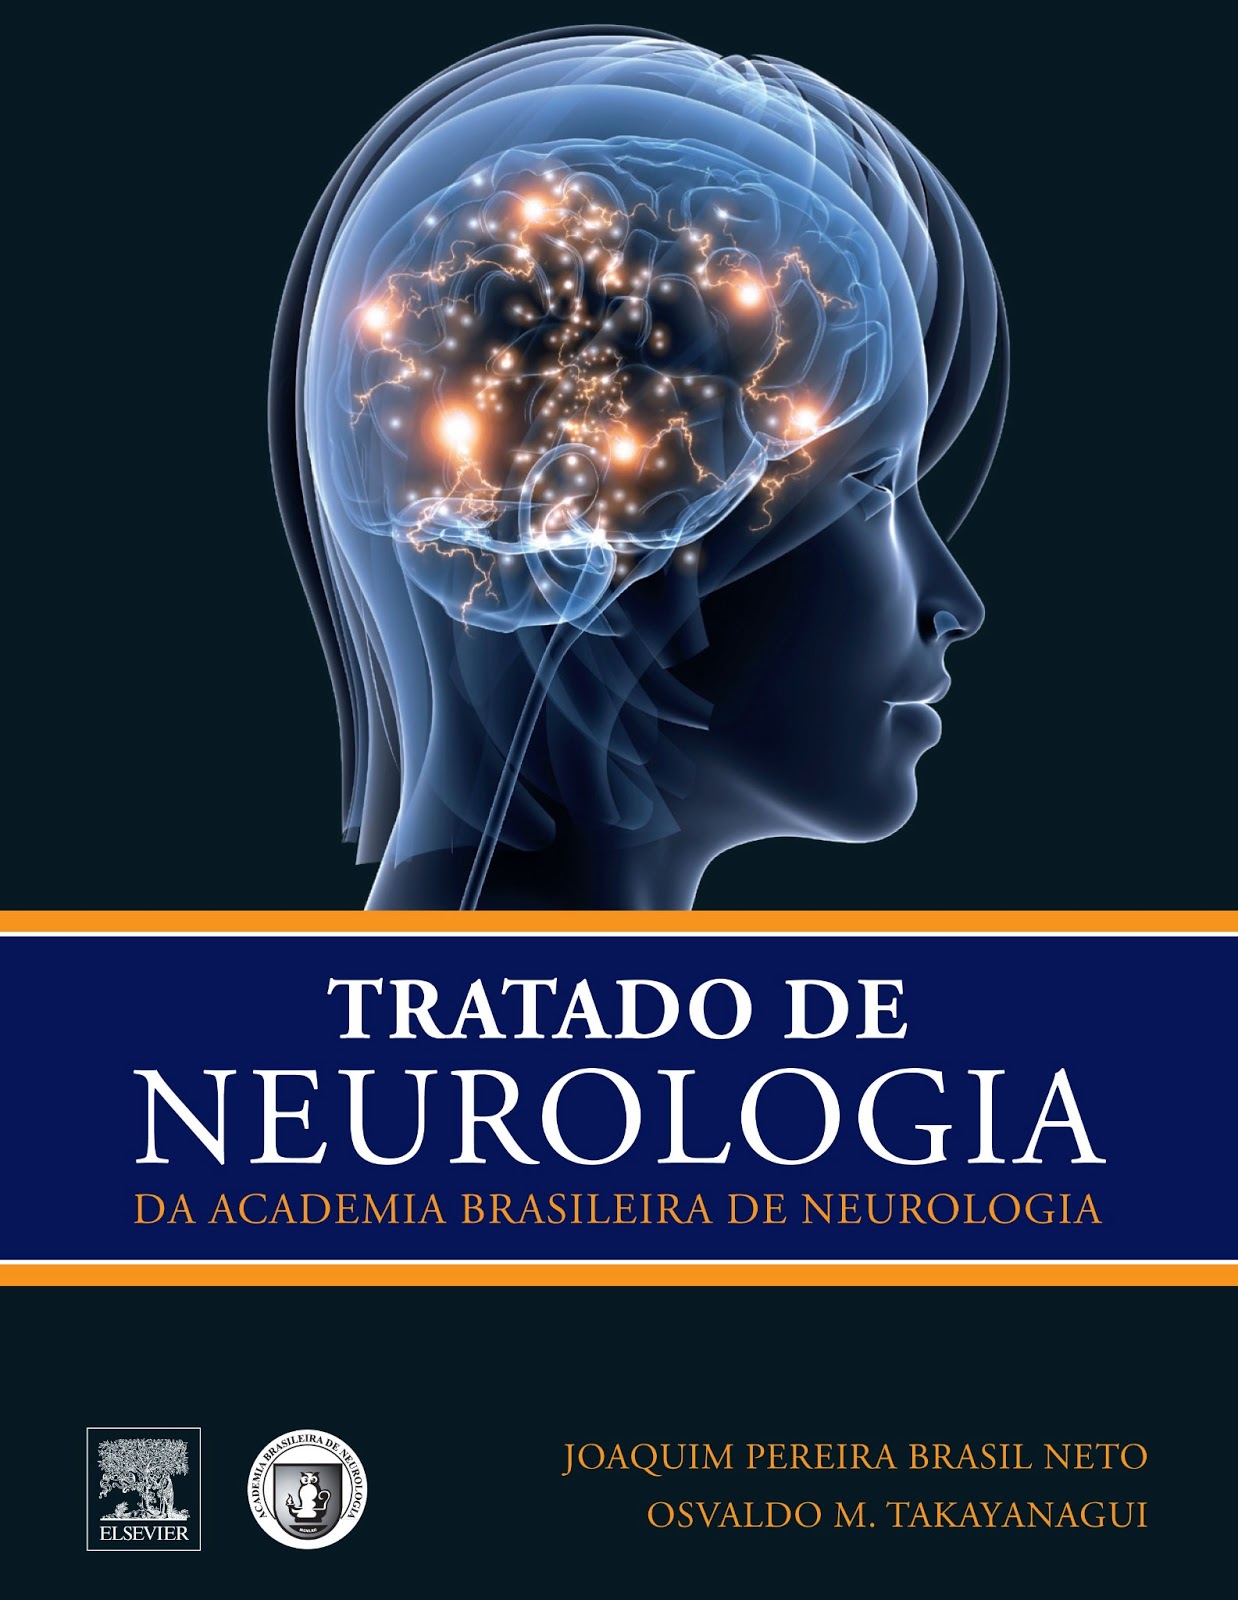 neuroinforma-o-orgulho-para-a-neurologia-nacional-primeiro-tratado